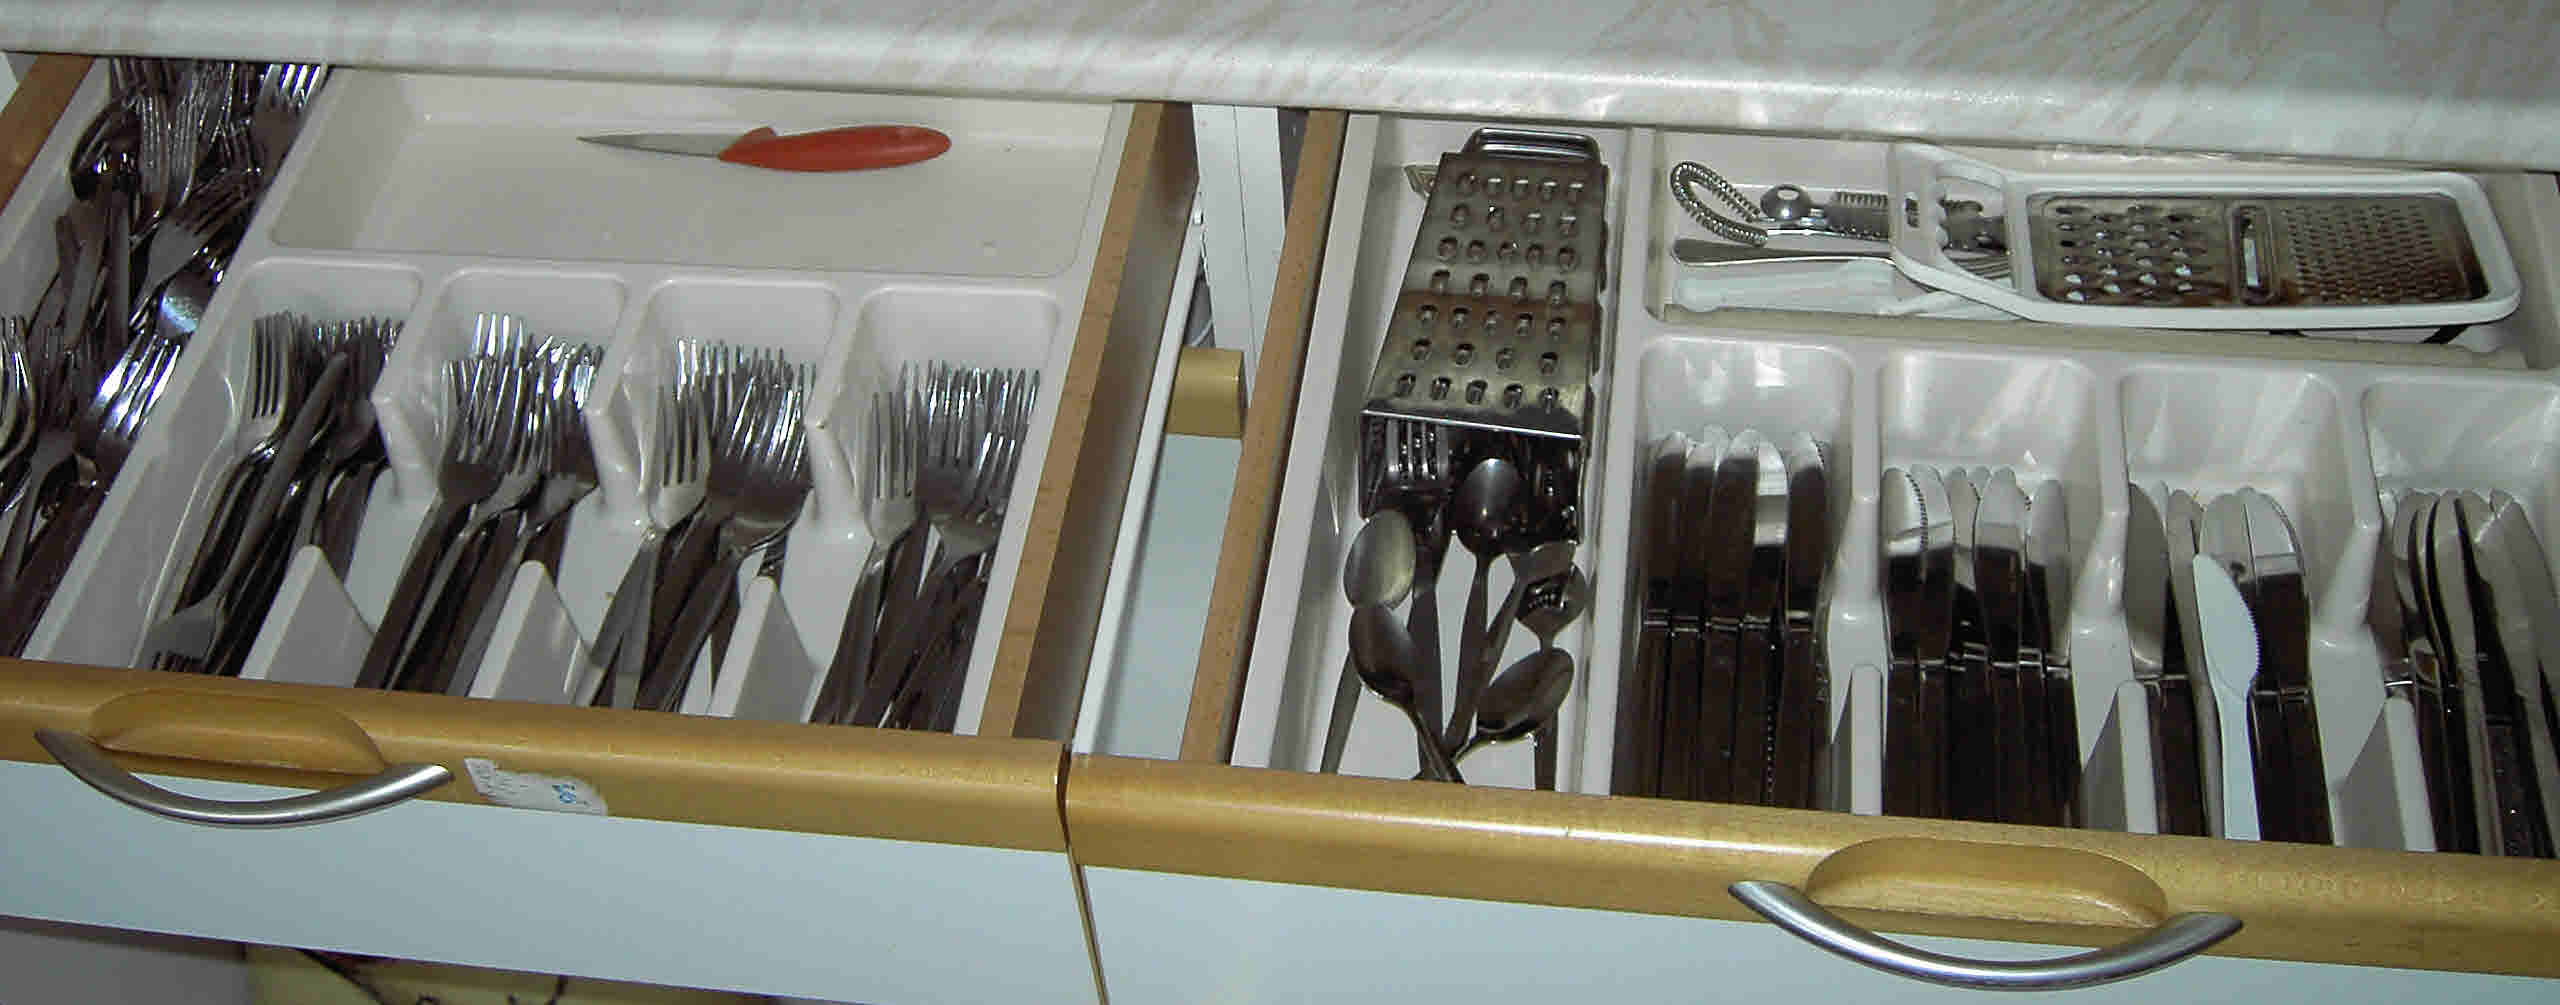 Kitchen 2014 cutlery